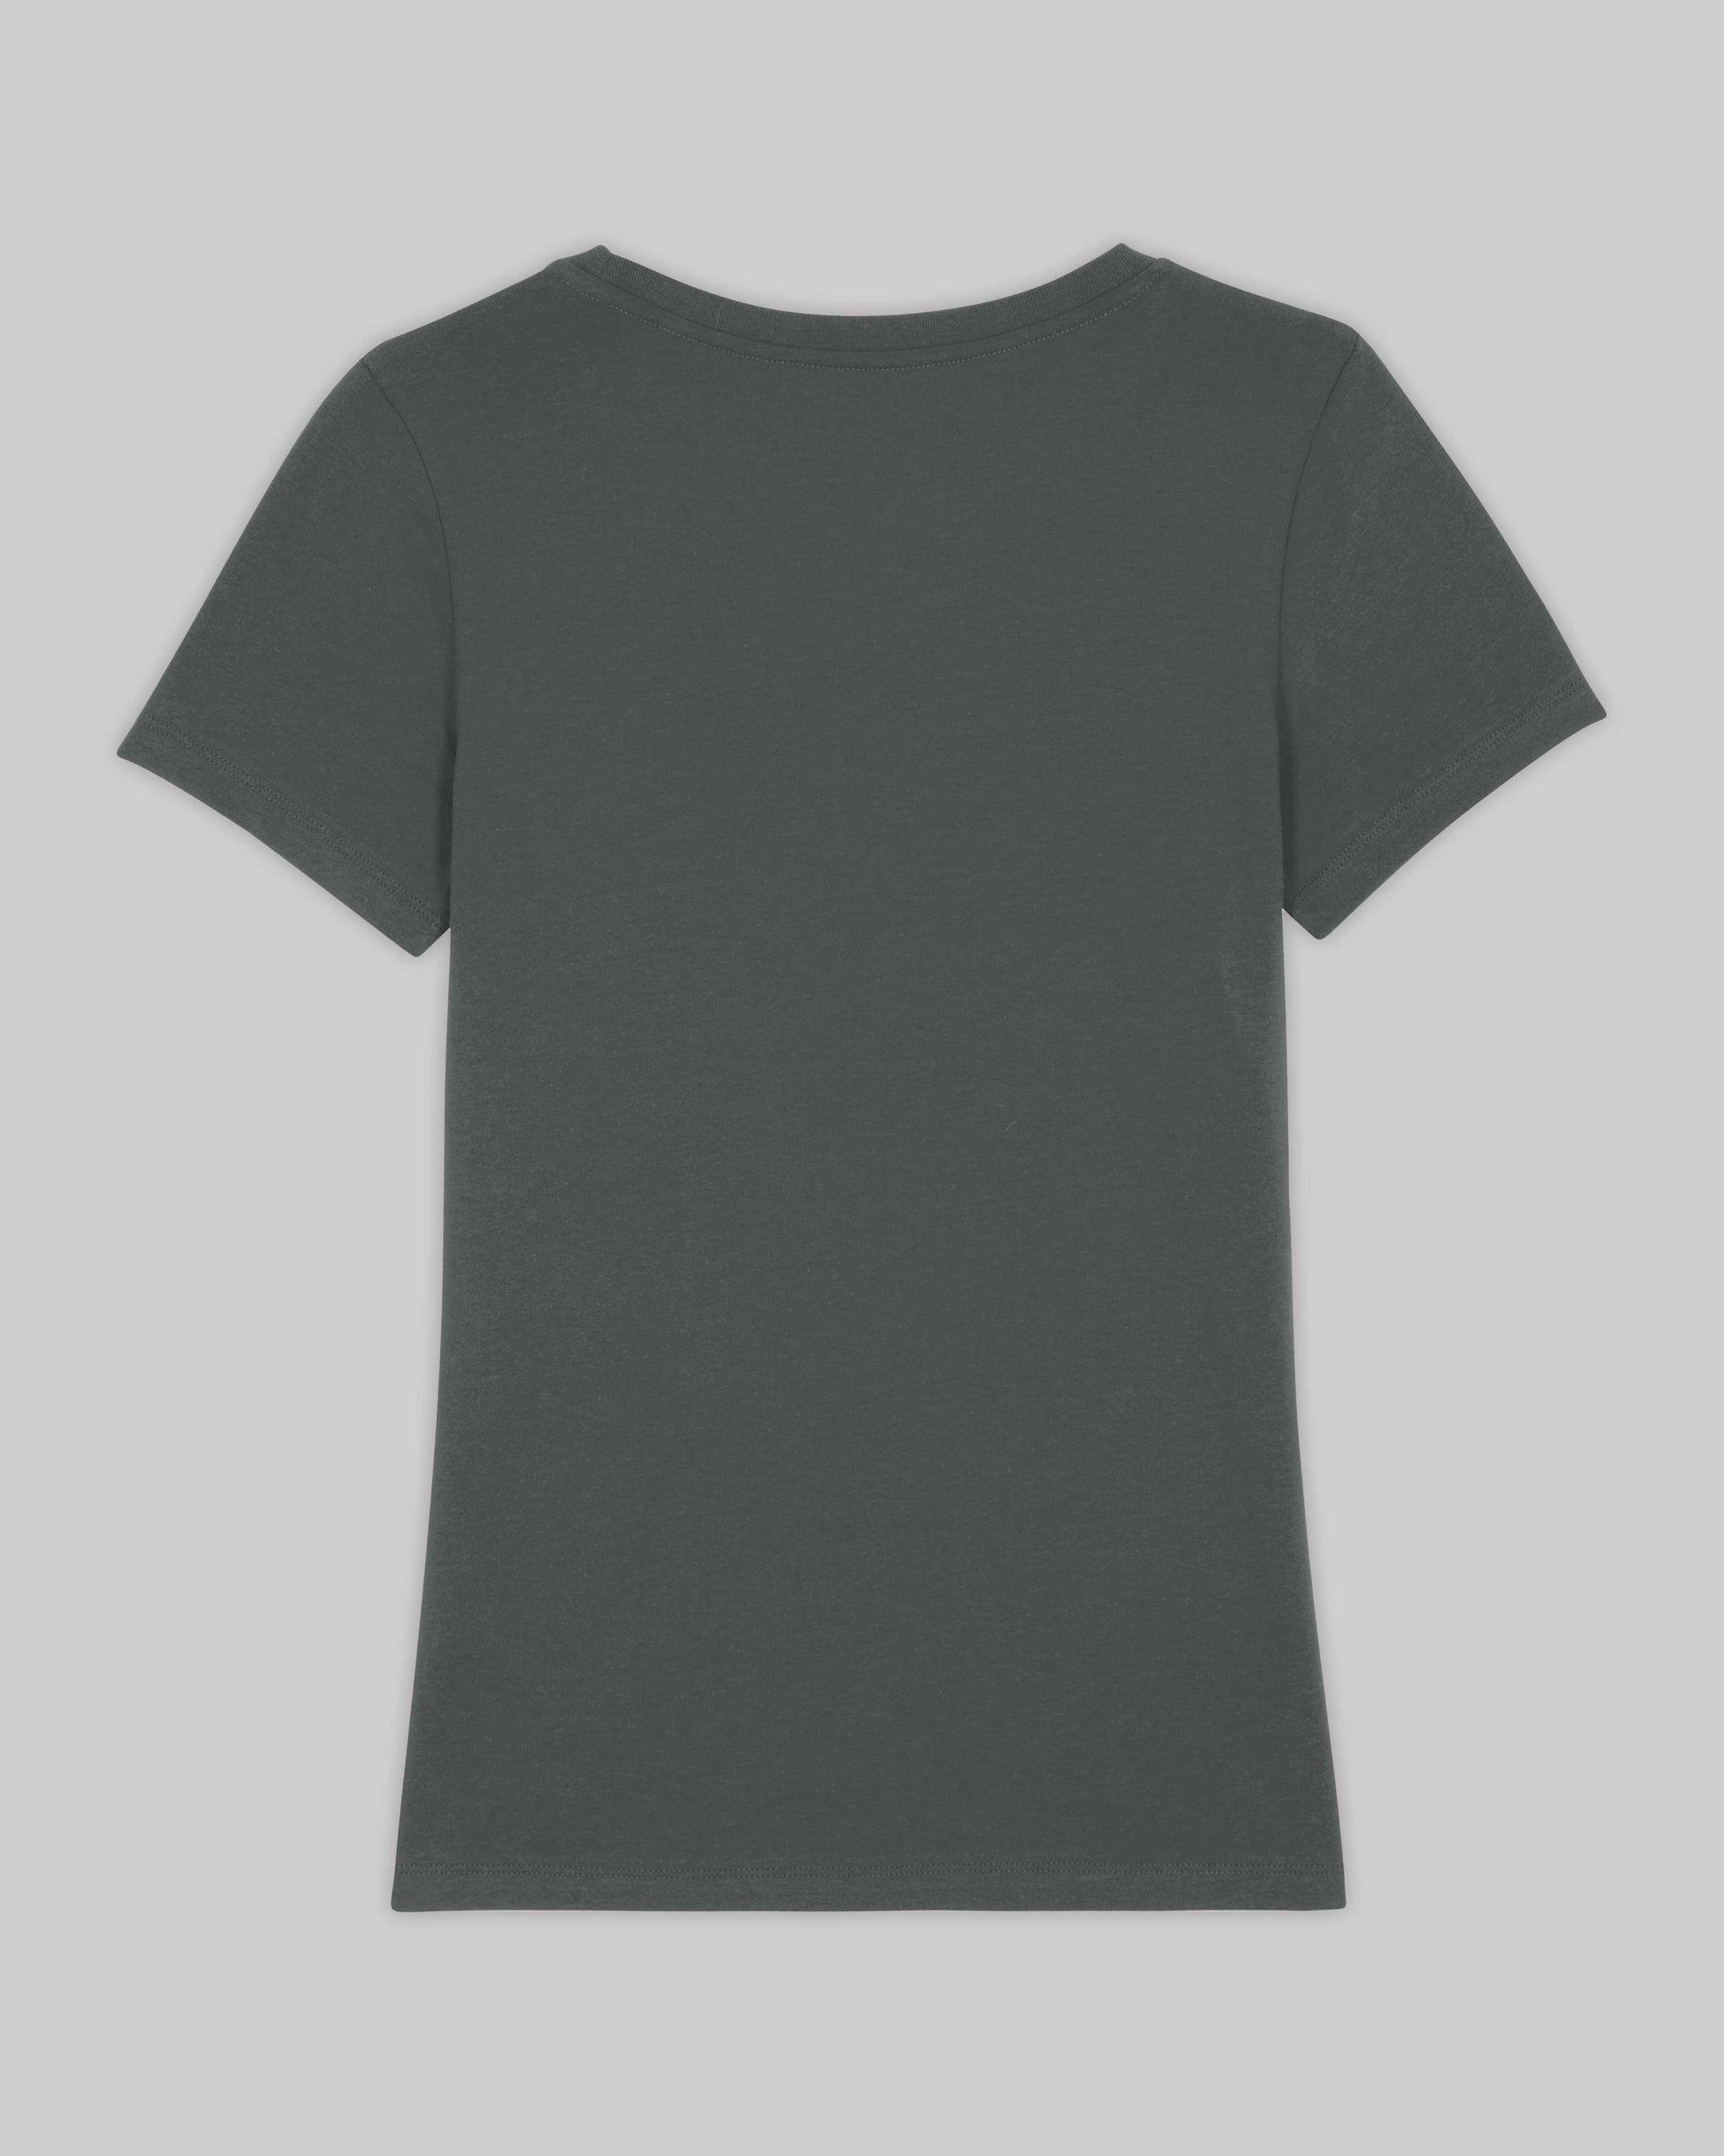 EINHORST® Organic Shirt tailliert in "Anthracite" mit dem Motiv "pride Regenbogen" in der Kombination weißer Regenbogen mit weißer Schrift, Bild von Shirt von hinten